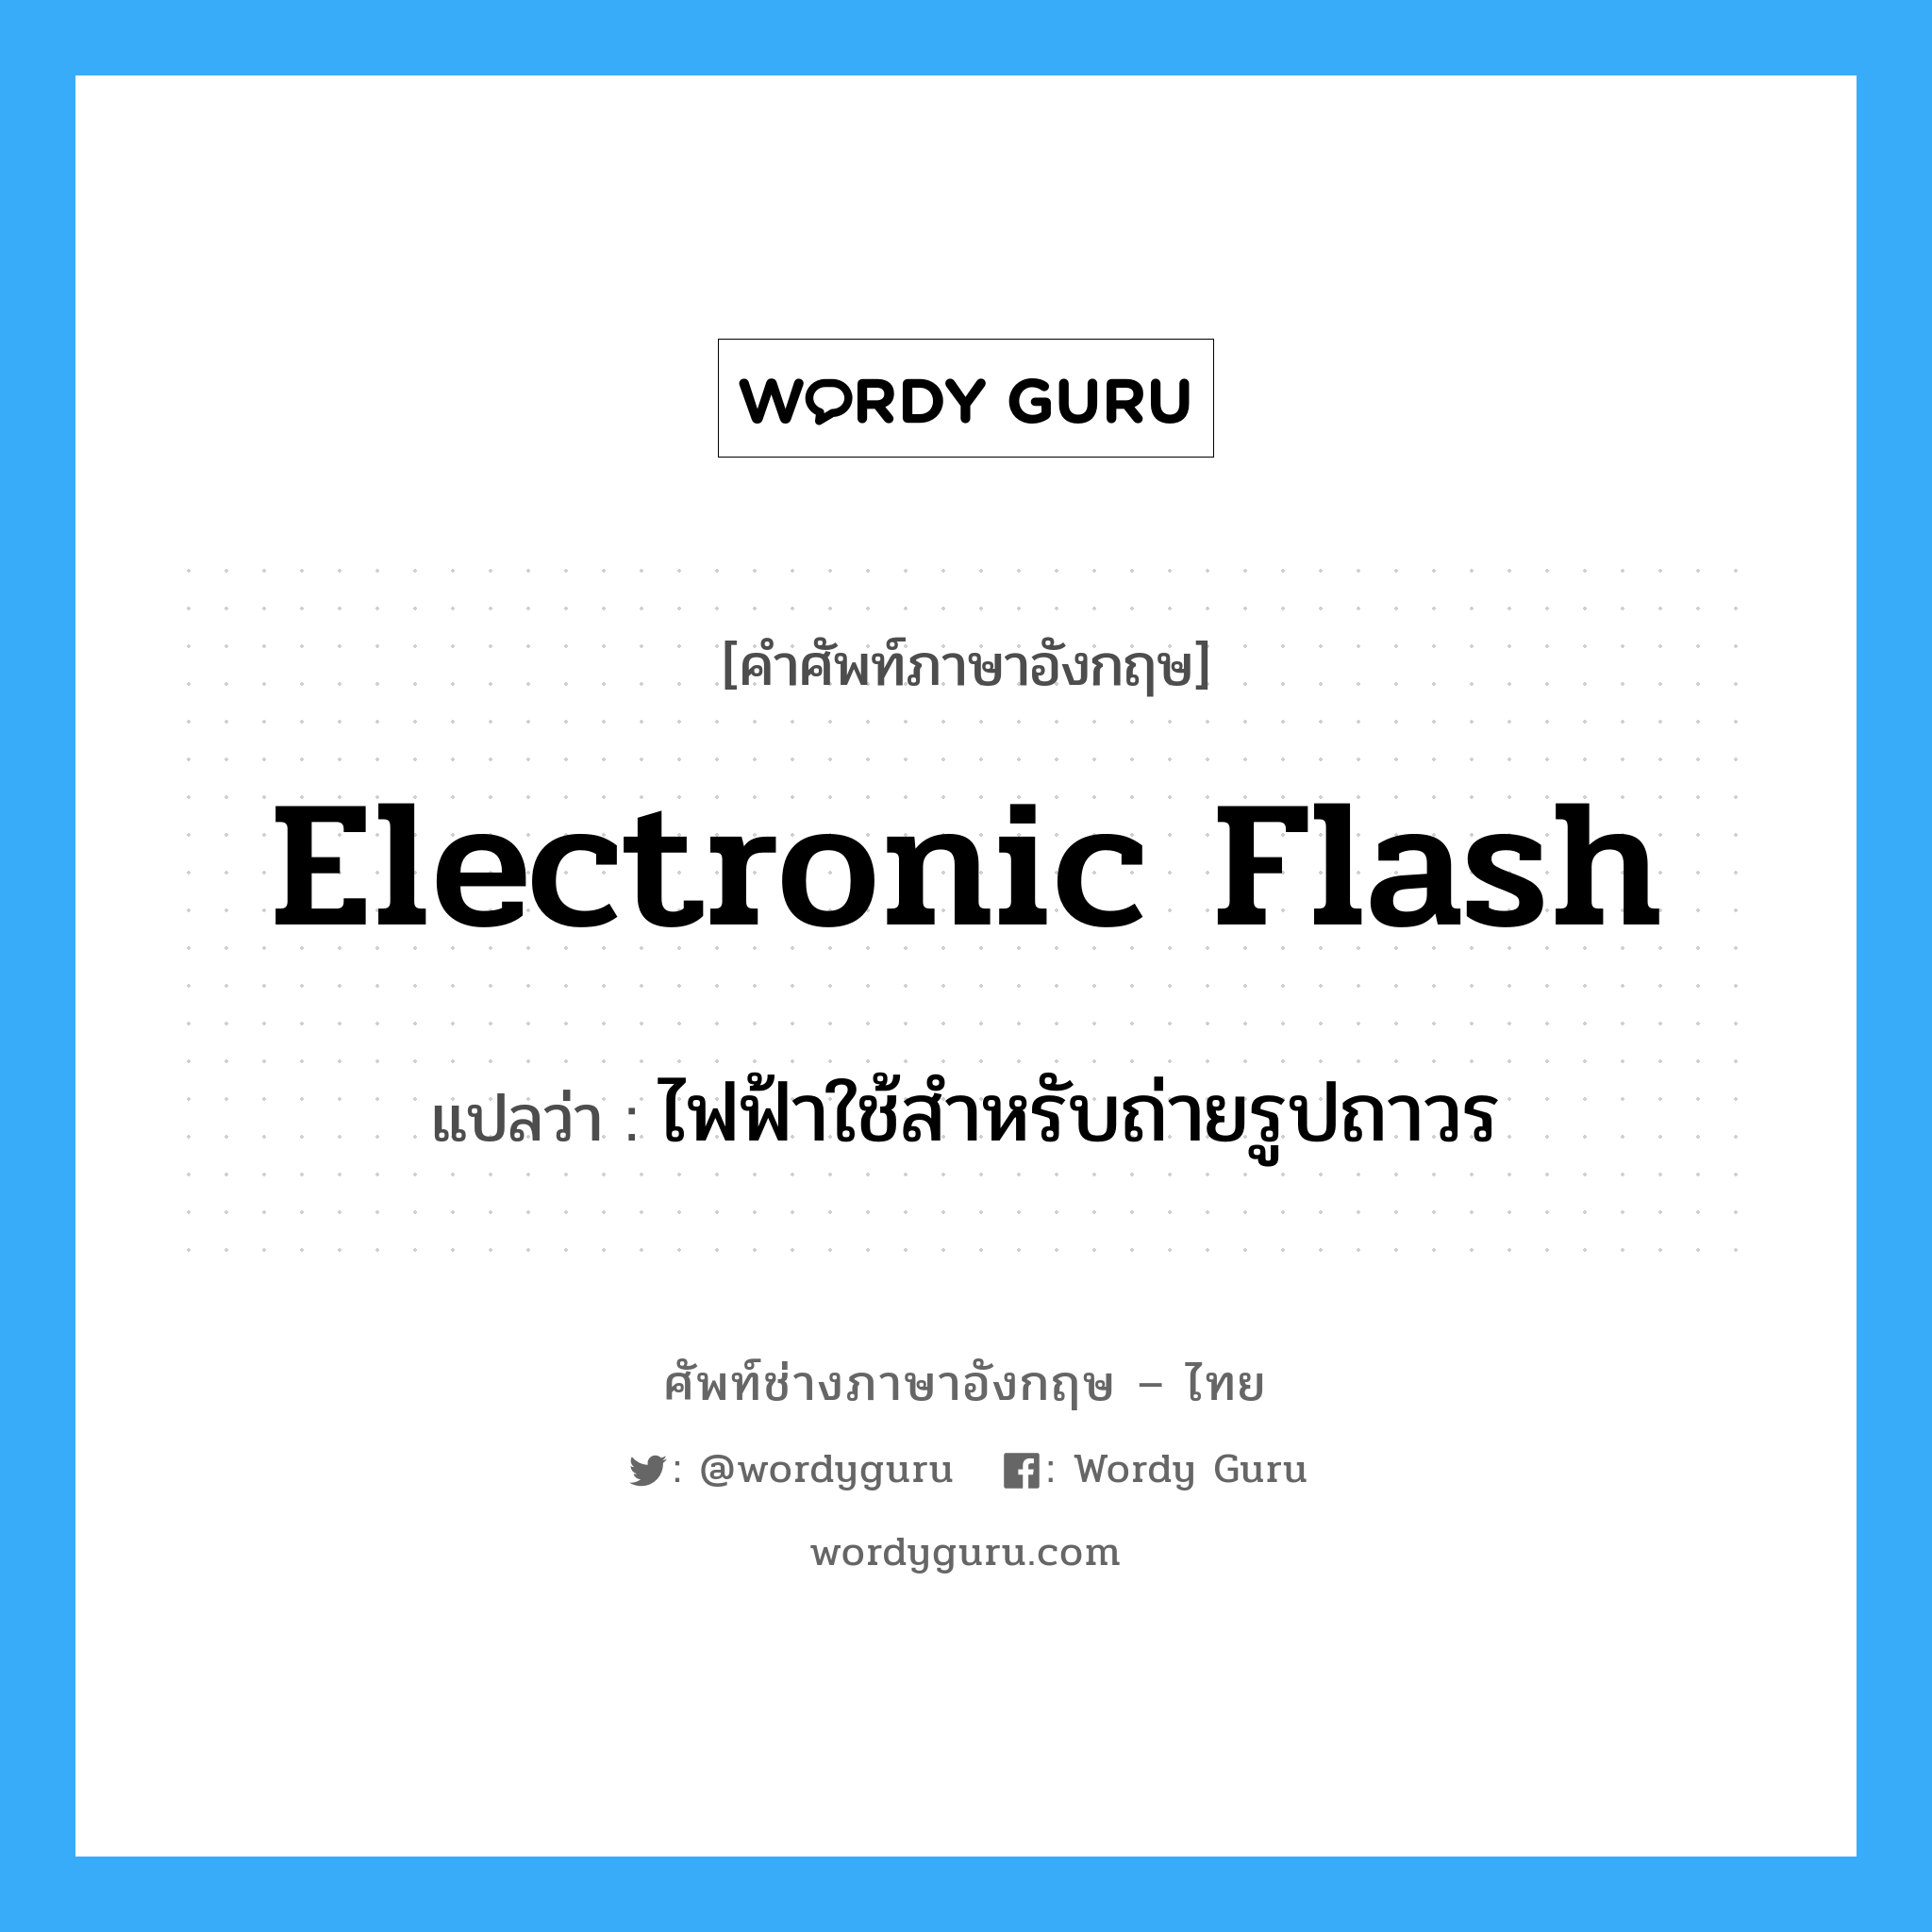 ไฟฟ้าใช้สำหรับถ่ายรูปถาวร ภาษาอังกฤษ?, คำศัพท์ช่างภาษาอังกฤษ - ไทย ไฟฟ้าใช้สำหรับถ่ายรูปถาวร คำศัพท์ภาษาอังกฤษ ไฟฟ้าใช้สำหรับถ่ายรูปถาวร แปลว่า electronic flash